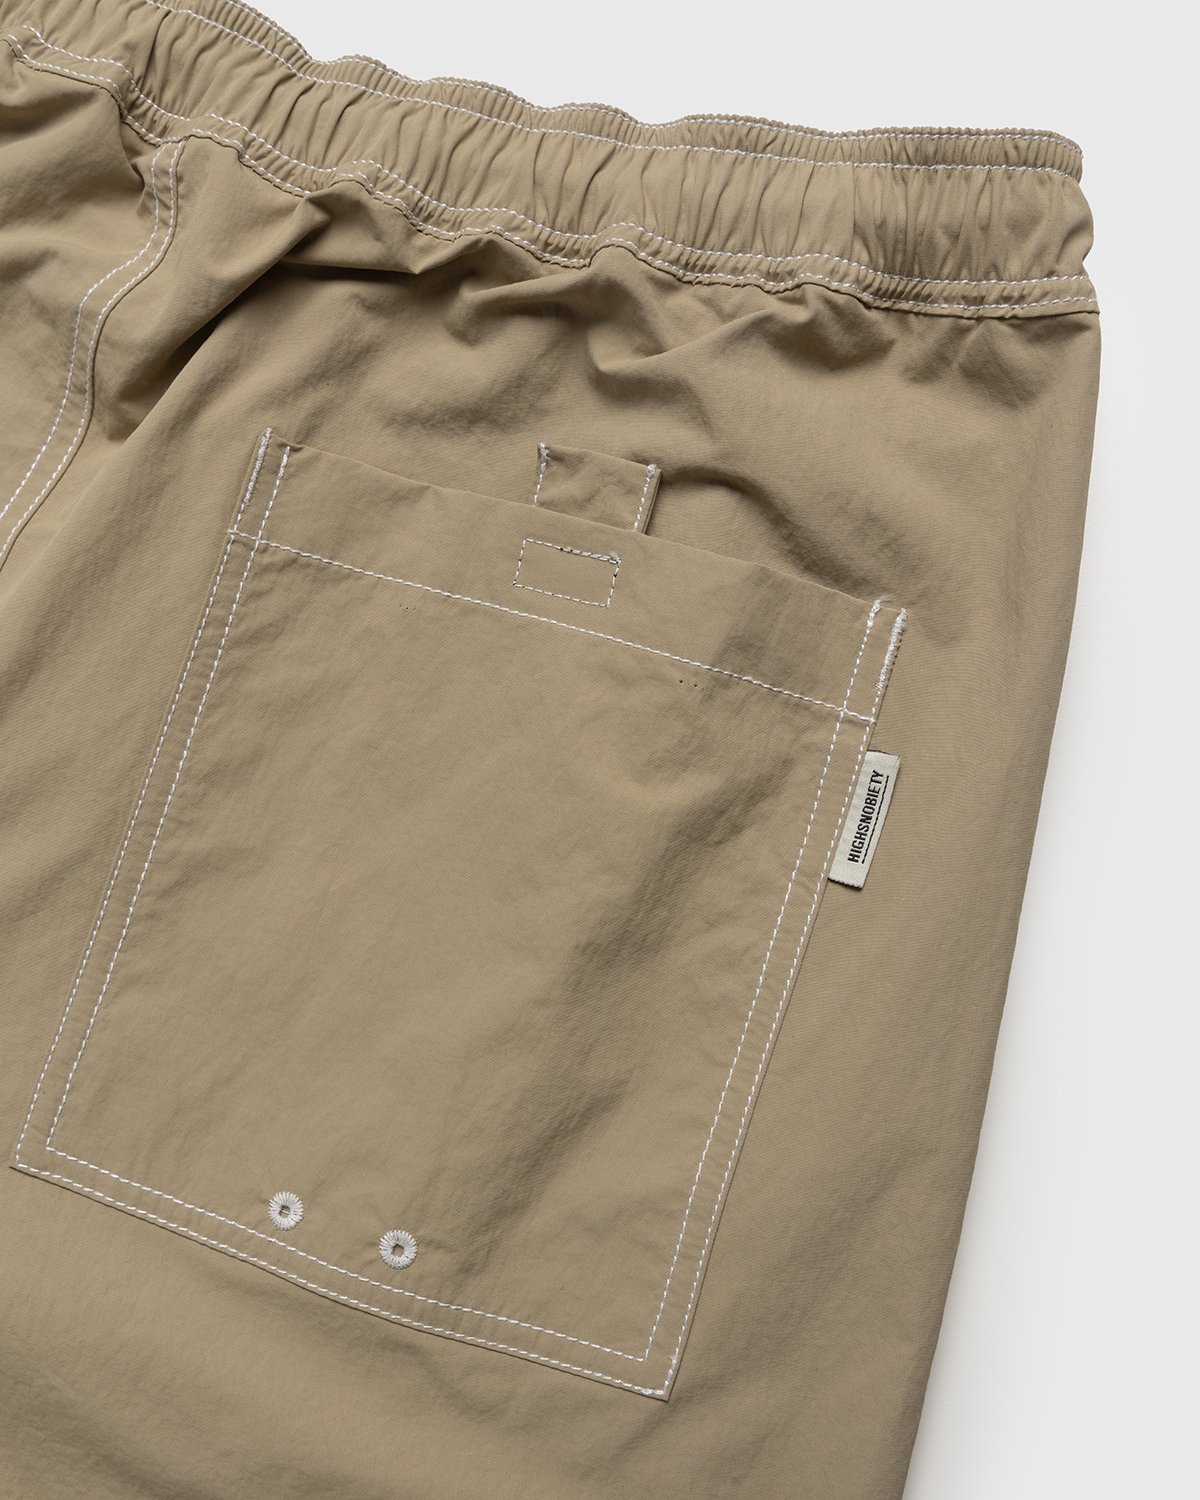 Highsnobiety - Contrast Brushed Nylon Elastic Pants Beige - Clothing - Beige - Image 4